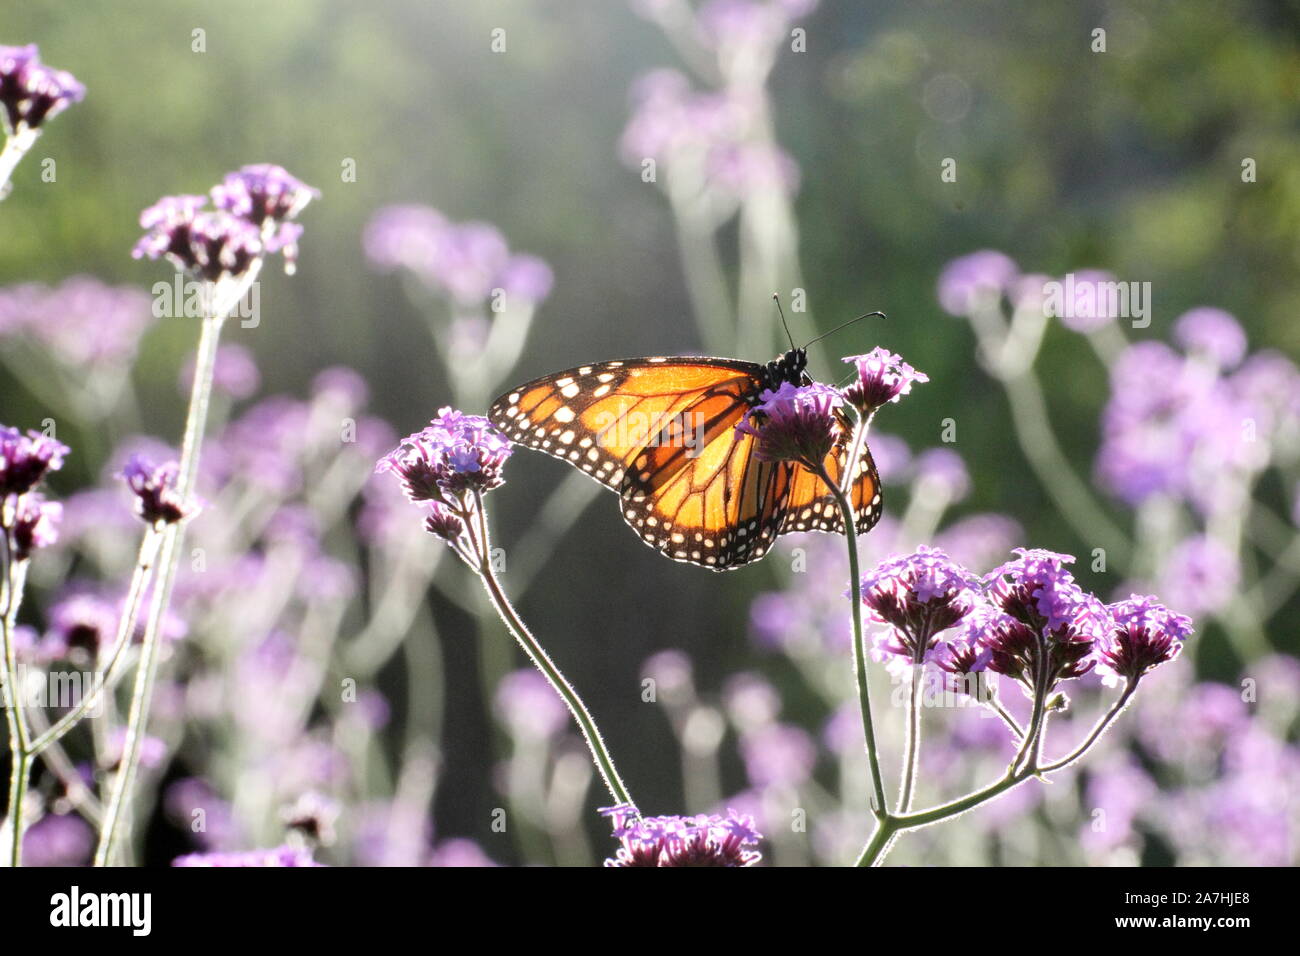 Dettaglio della farfalla delicata in posa di fiori viola Foto Stock